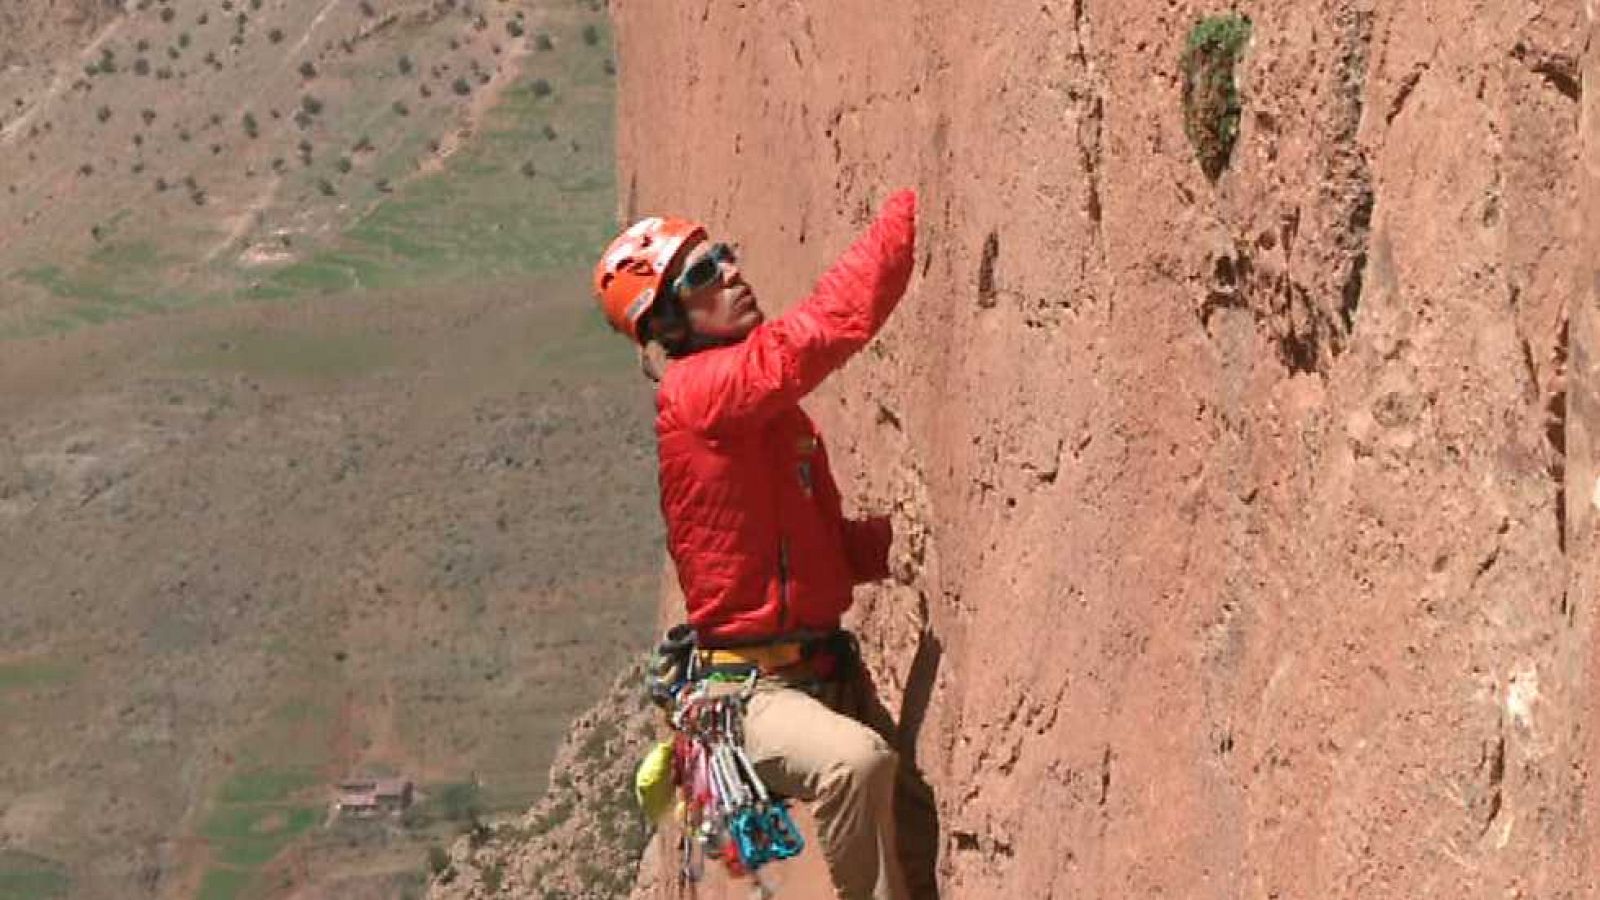 Al filo de lo imposible - En la tierra de los bereberes: escalada en roca - Ver ahora